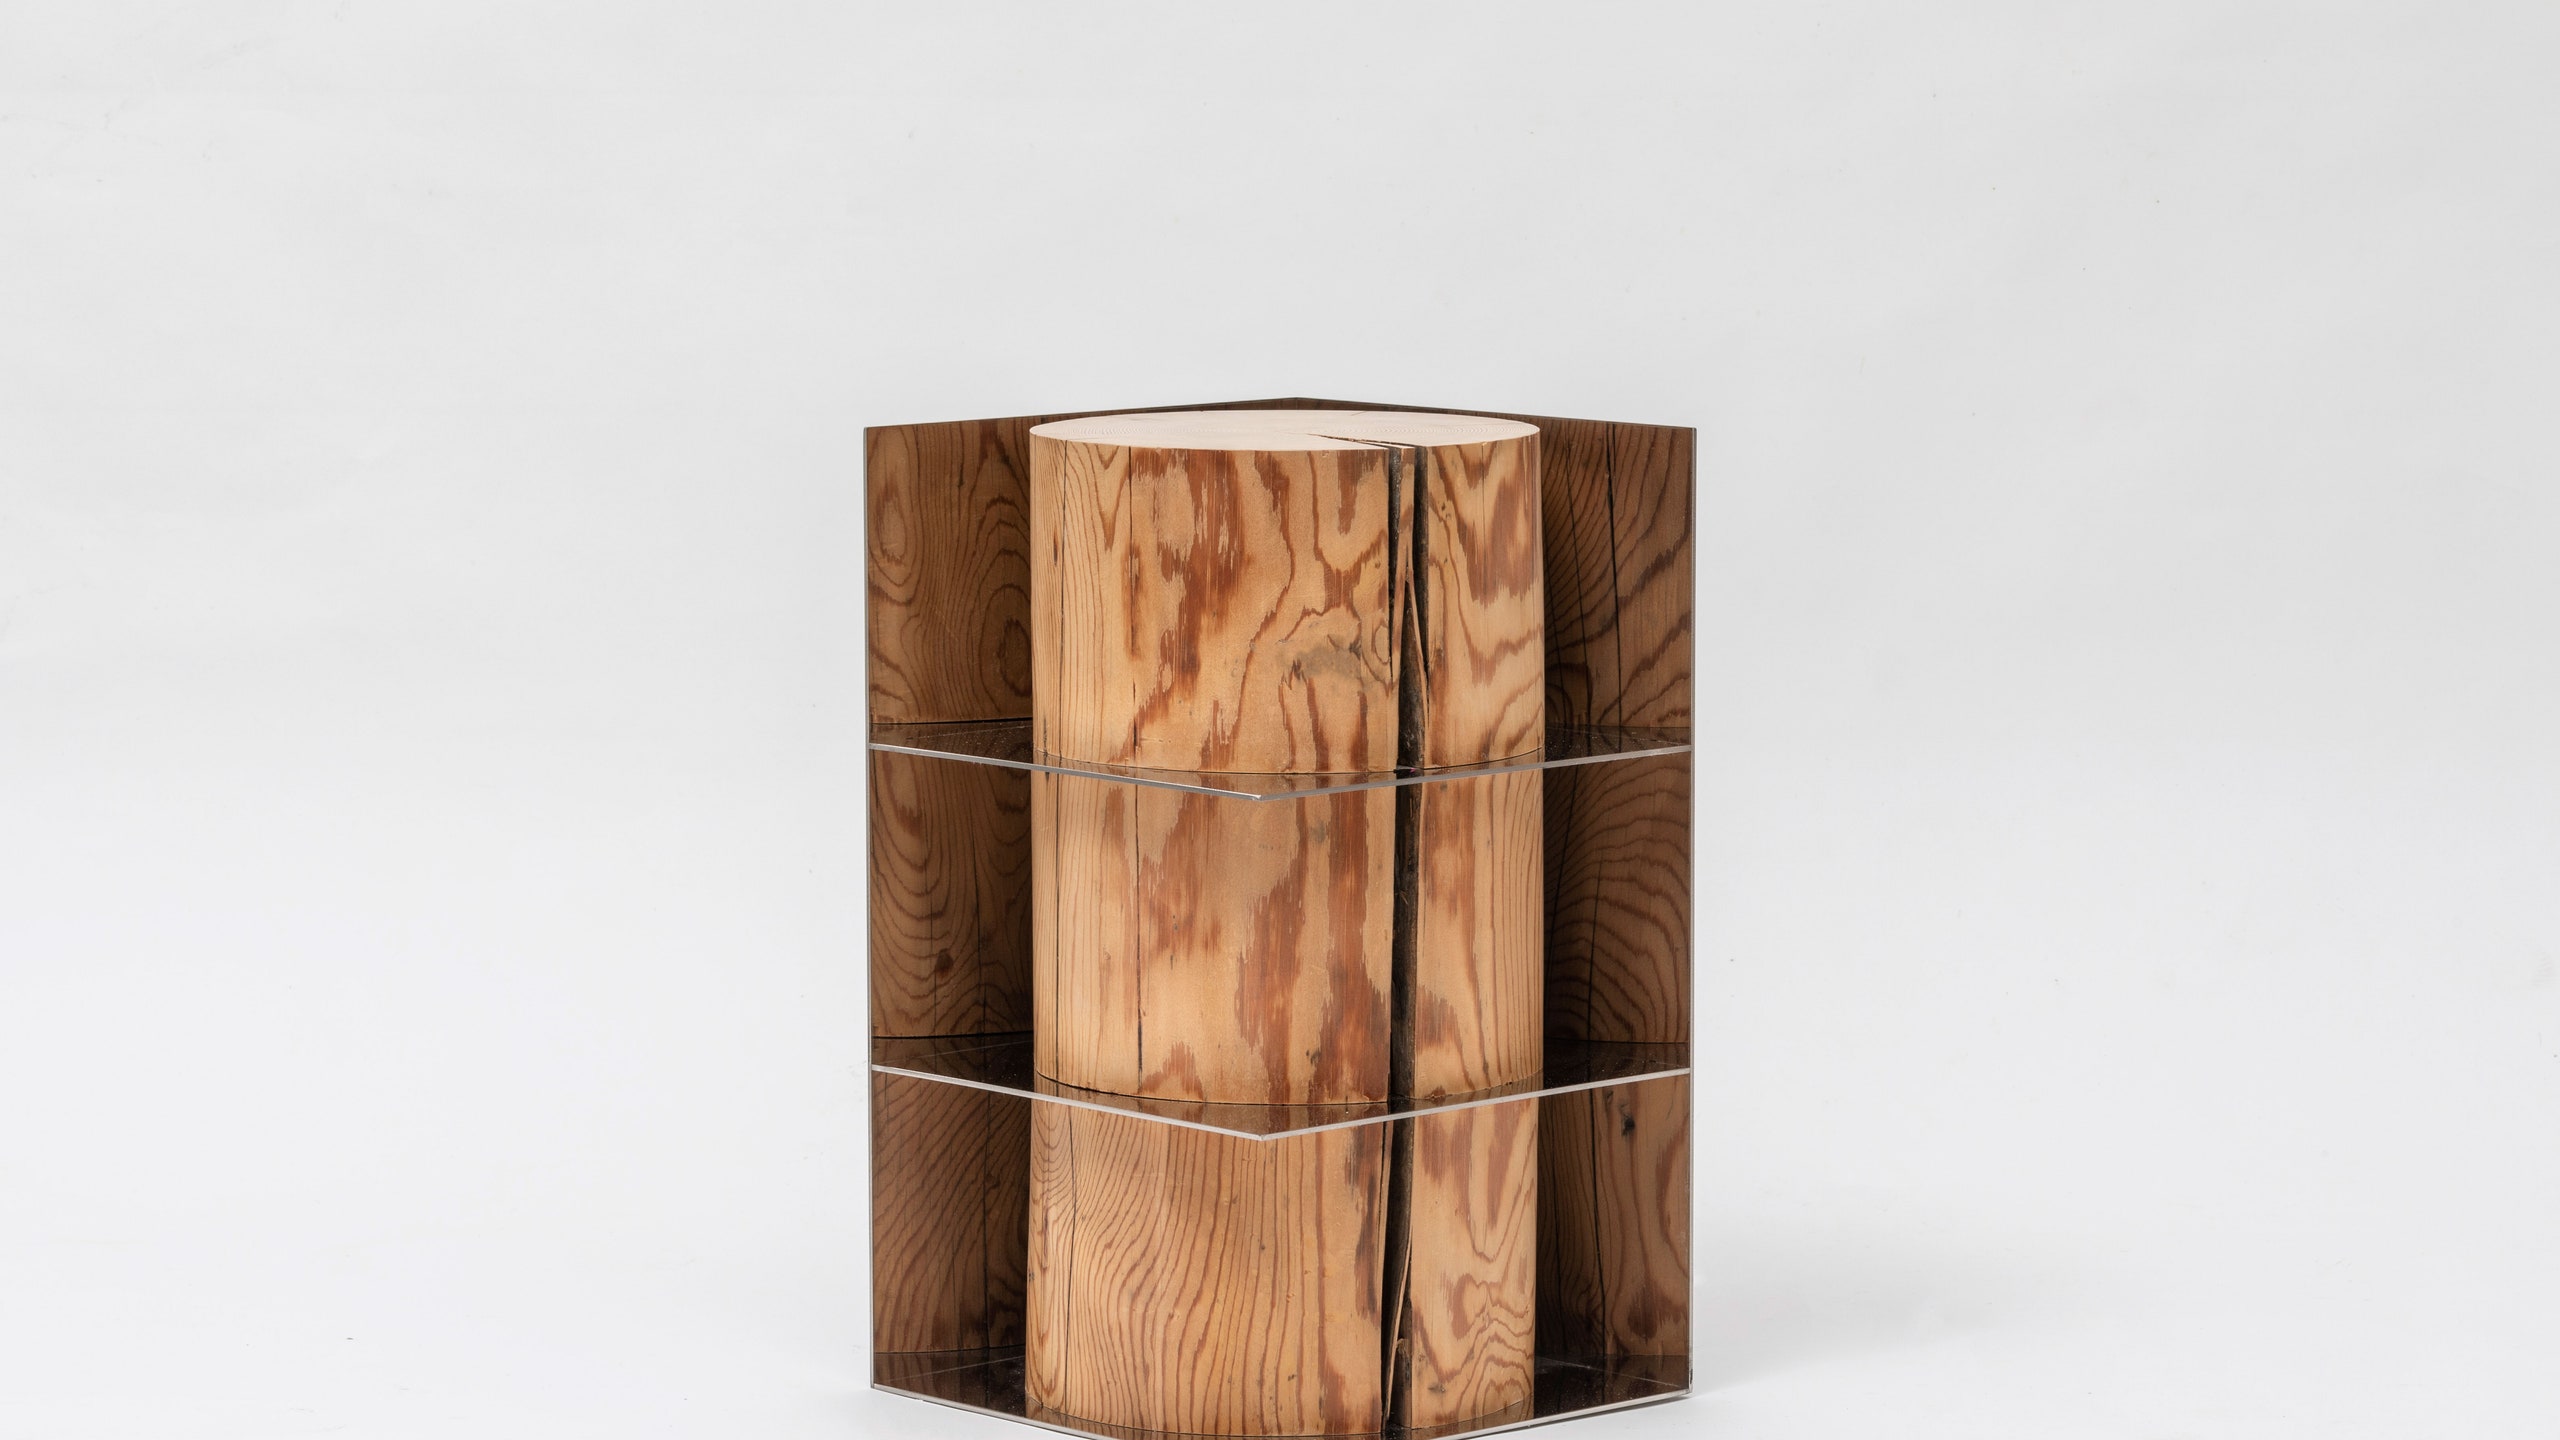 Контраст дерева и стали в коллекции мебели Шинкью Шона